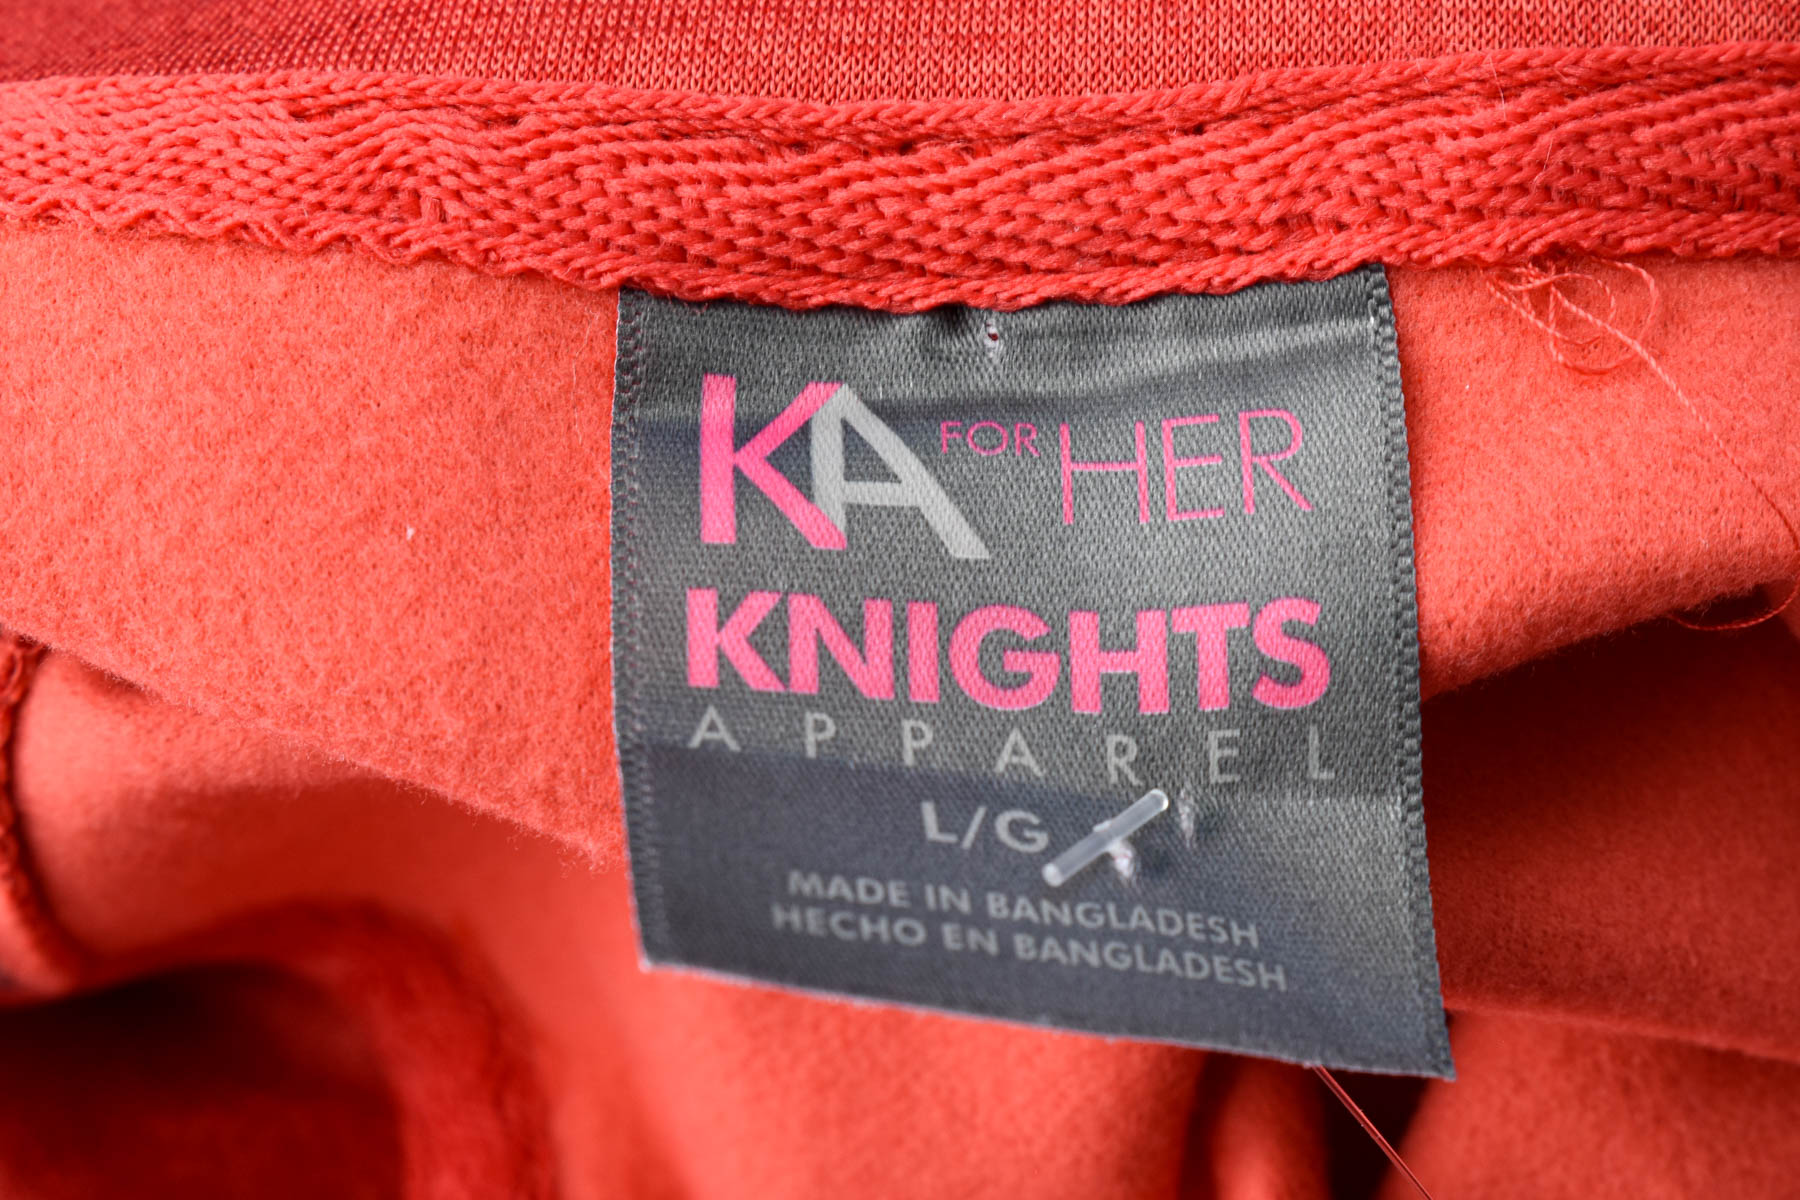 Bluza de sport pentru femei - KA KNIGHTS APPAREL - 2